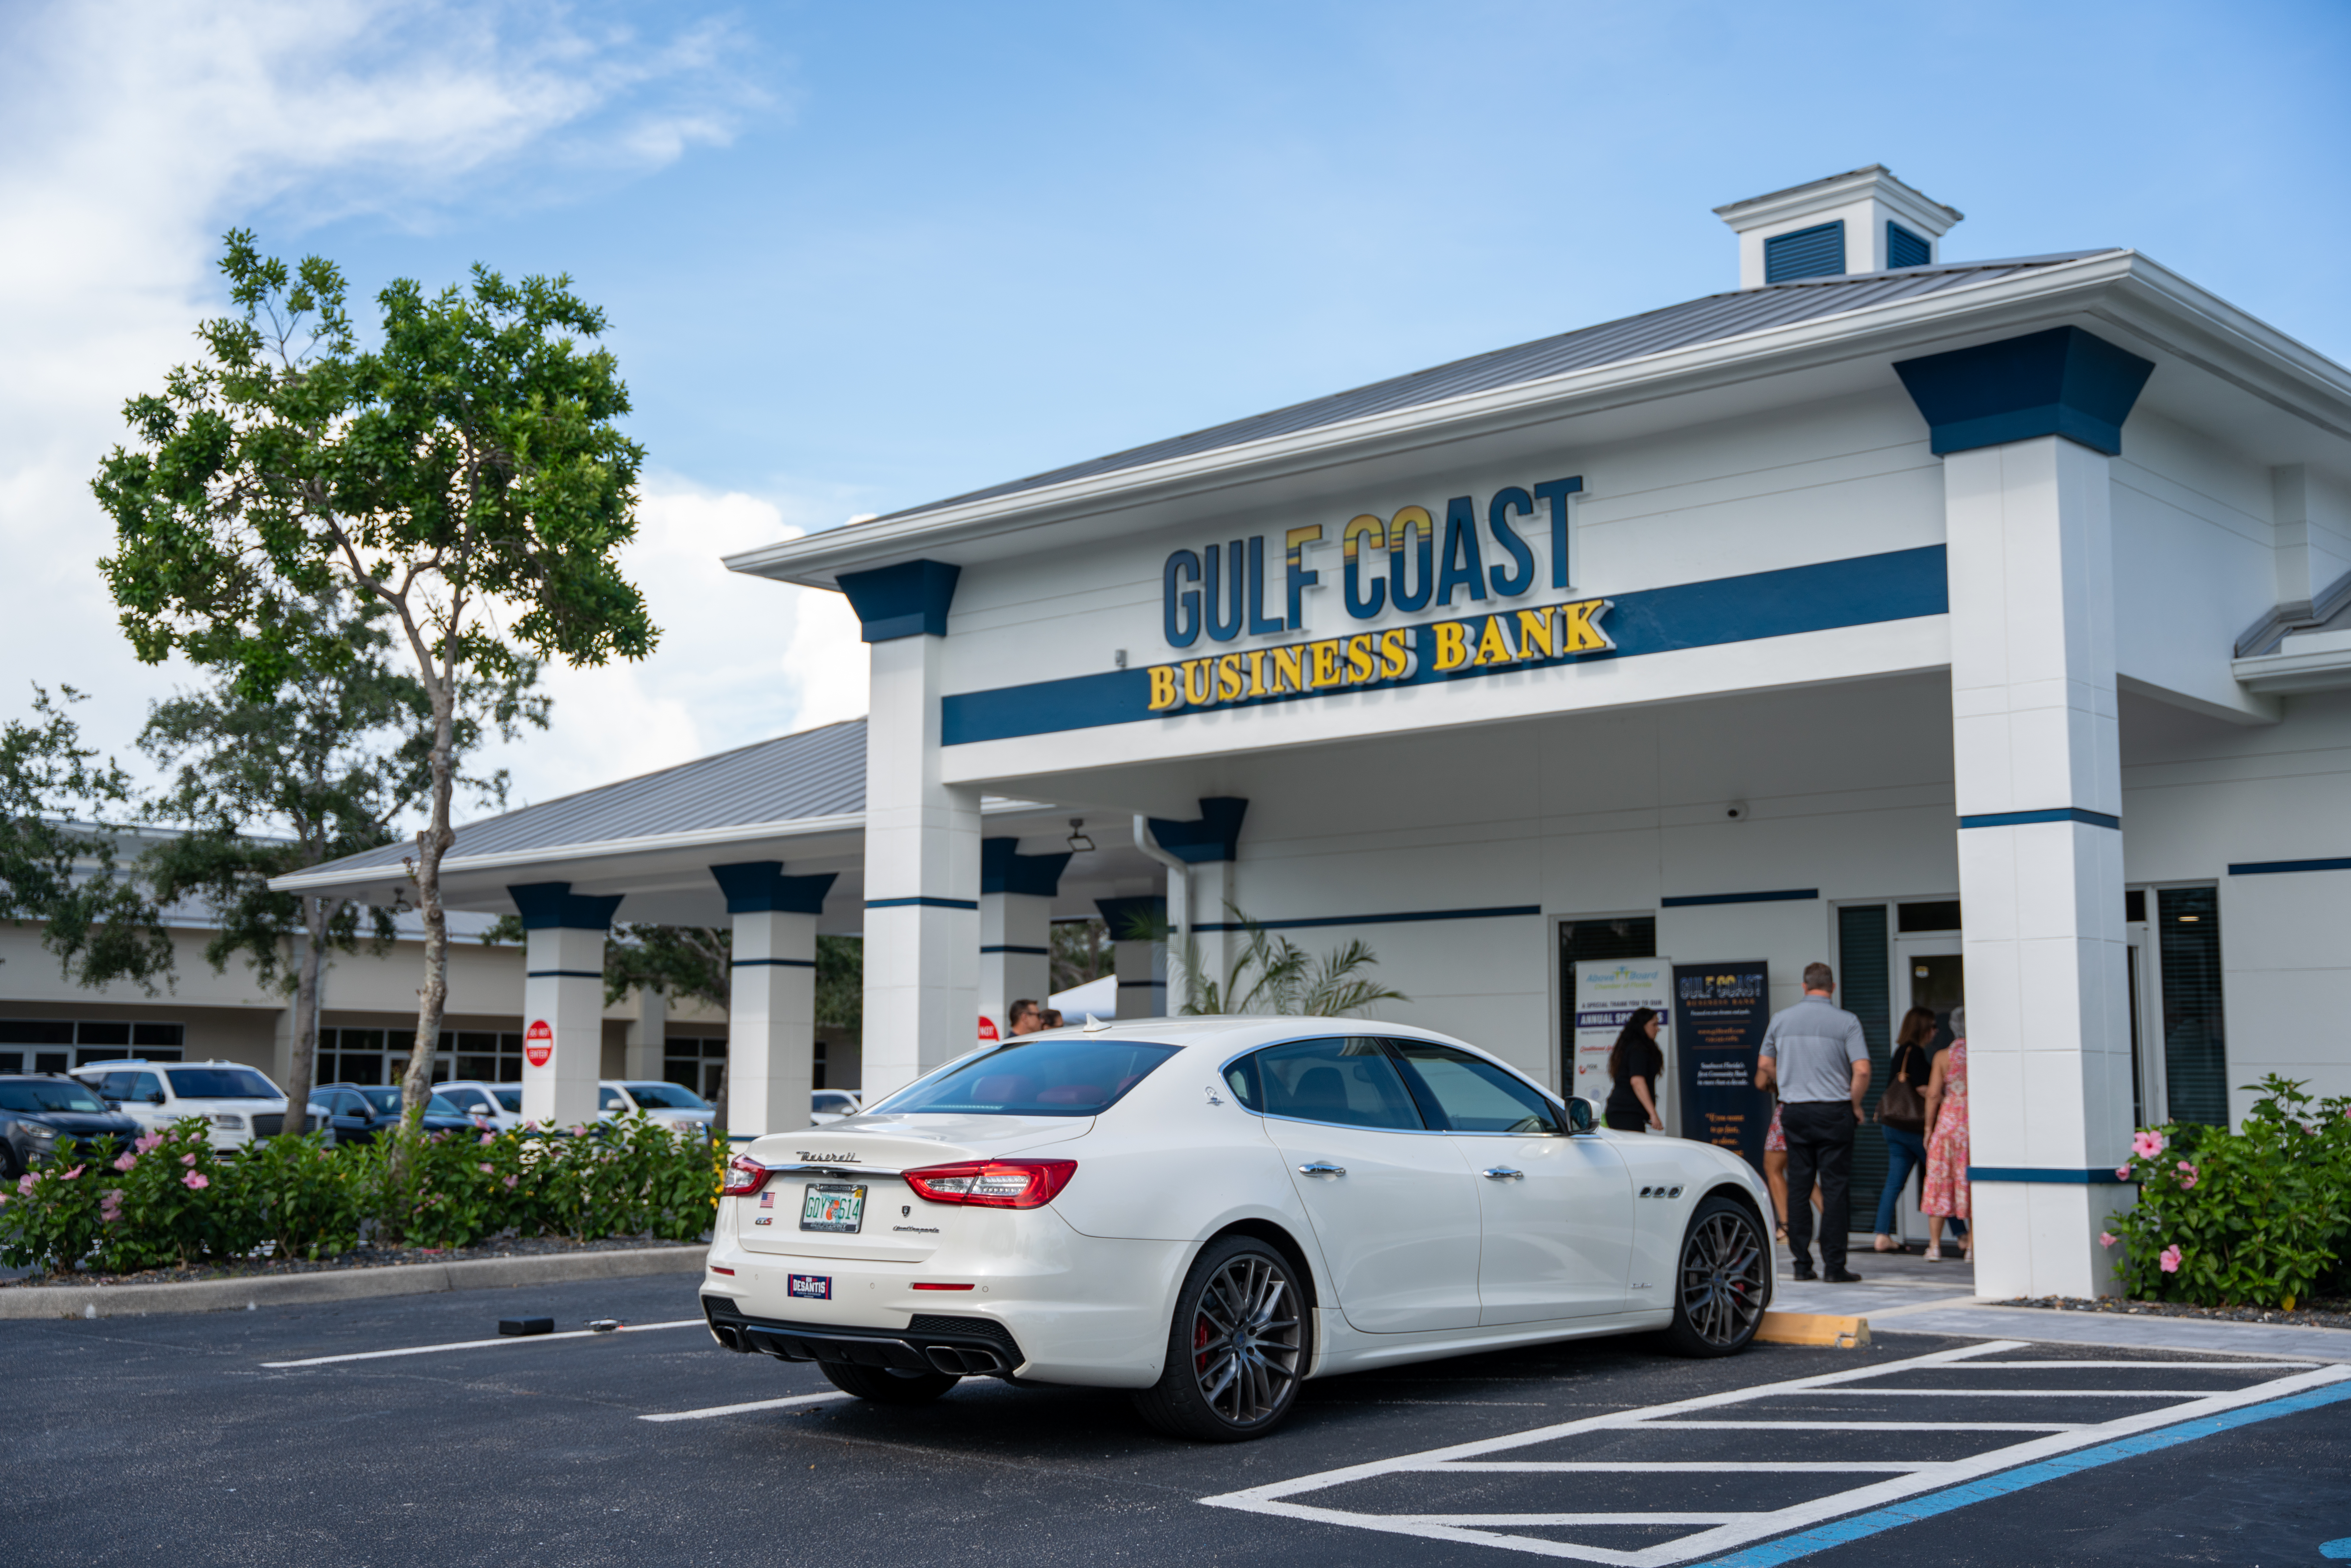 Gulf Coast Business Bank